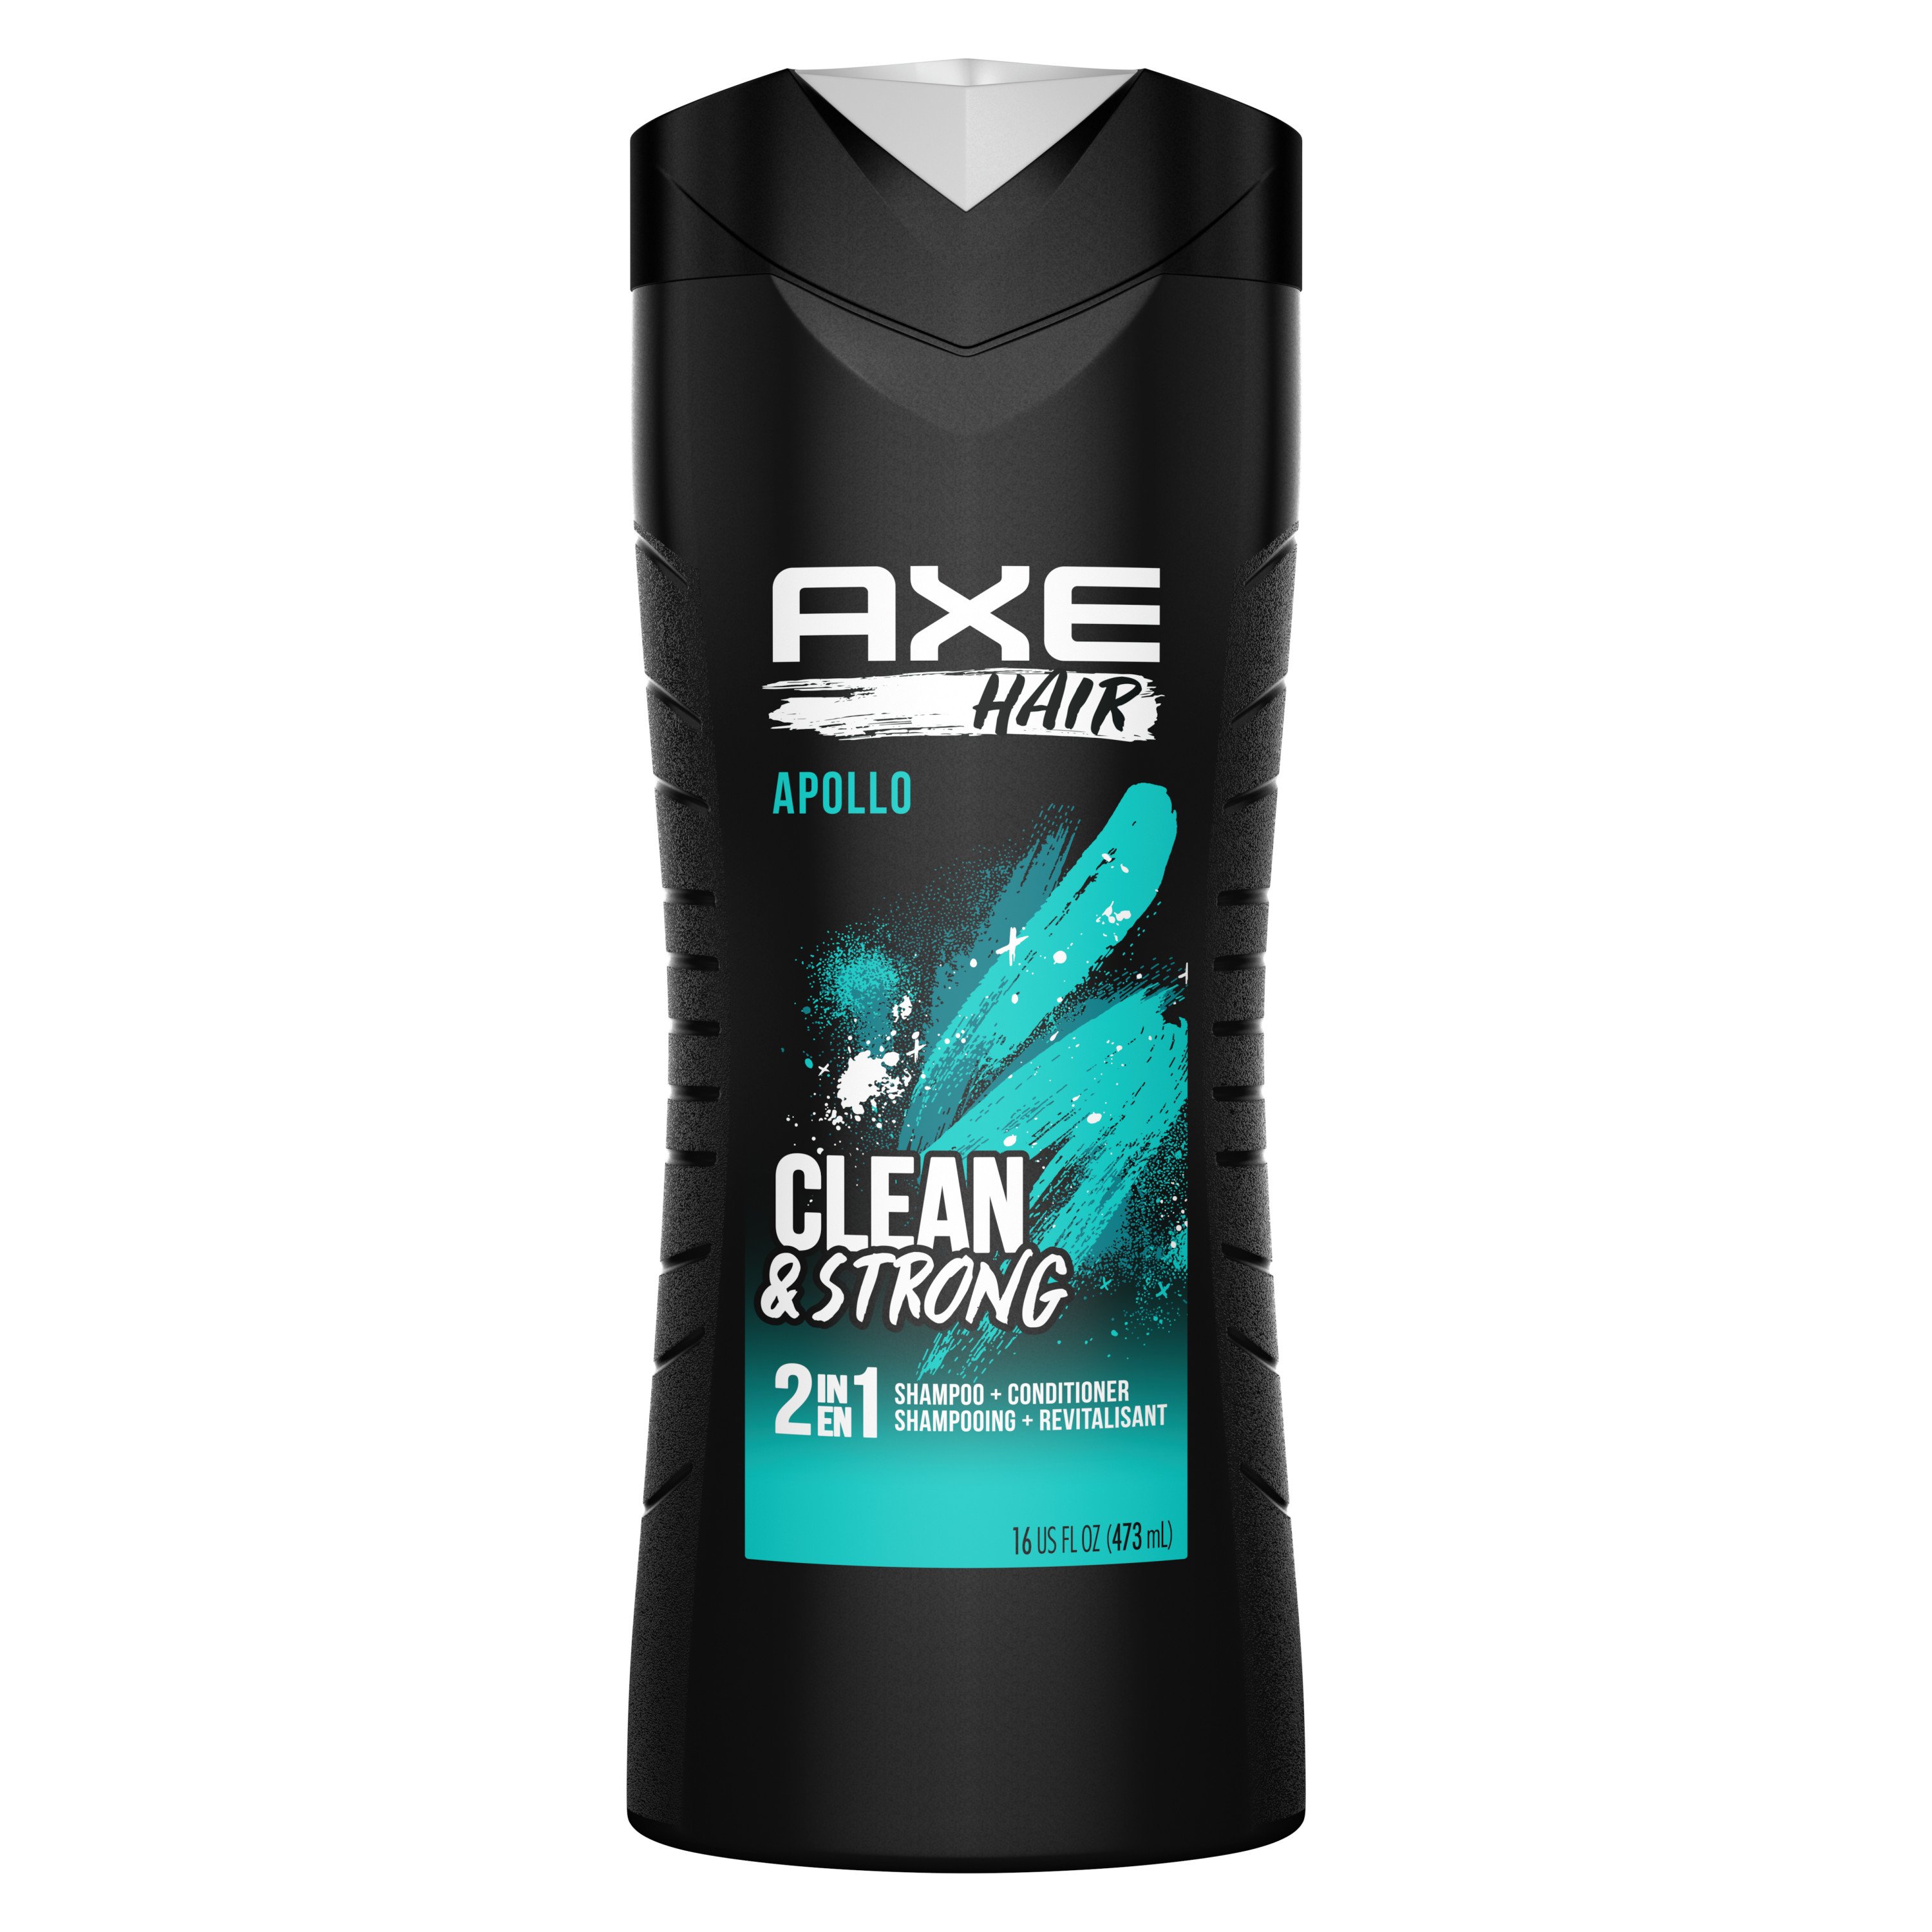 AXE Shampoo Conditioner 2-In-1 Apollo Hair at H-E-B